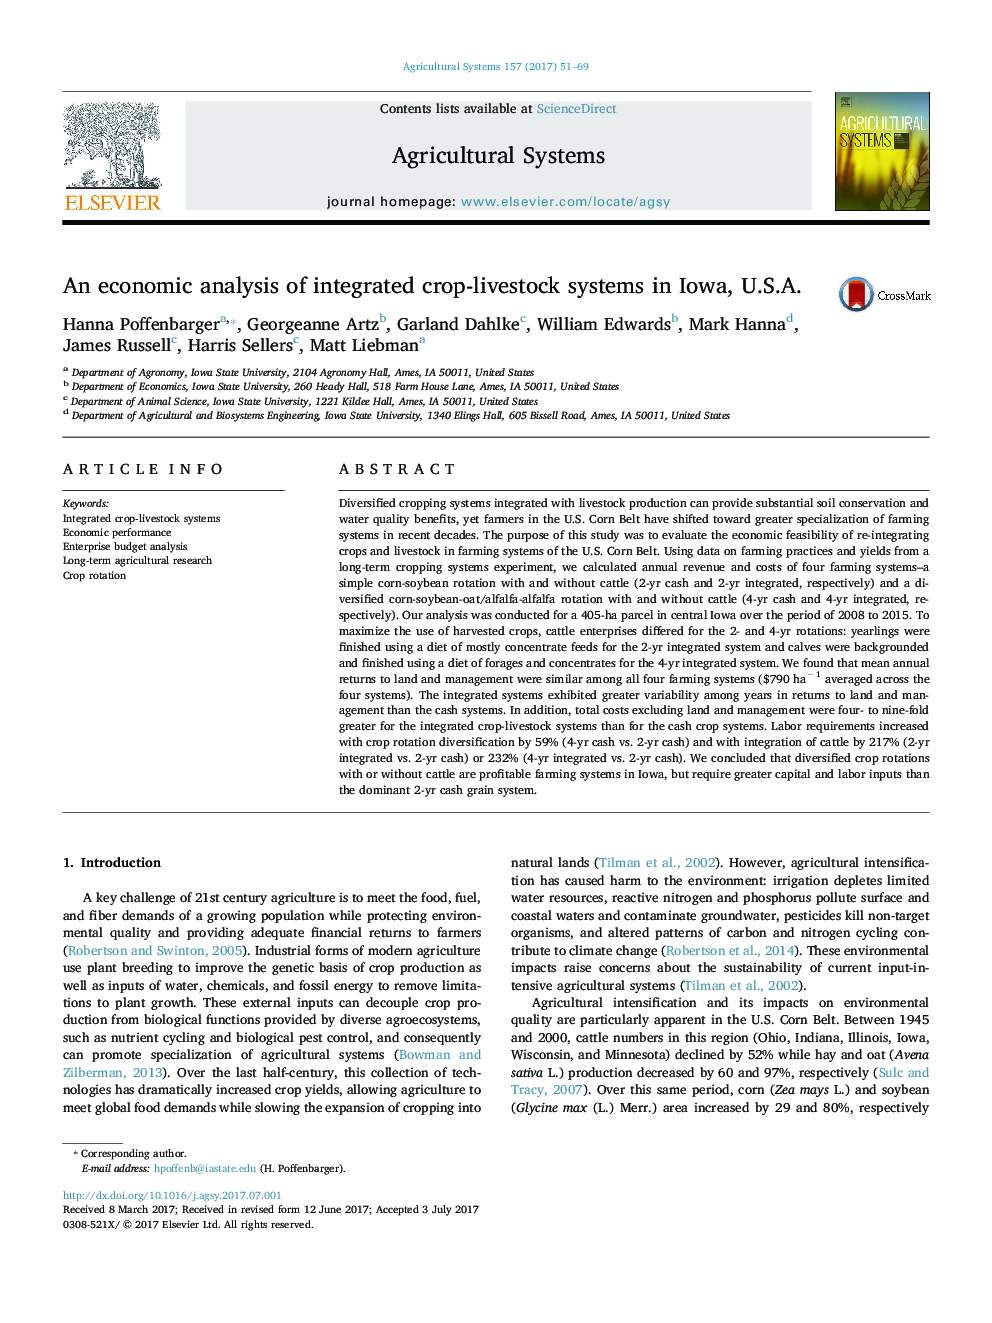 یک تجزیه و تحلیل اقتصادی از سیستم های دامپزشکی یکپارچه در ایاالت متحده، ایالات متحده آمریکا 